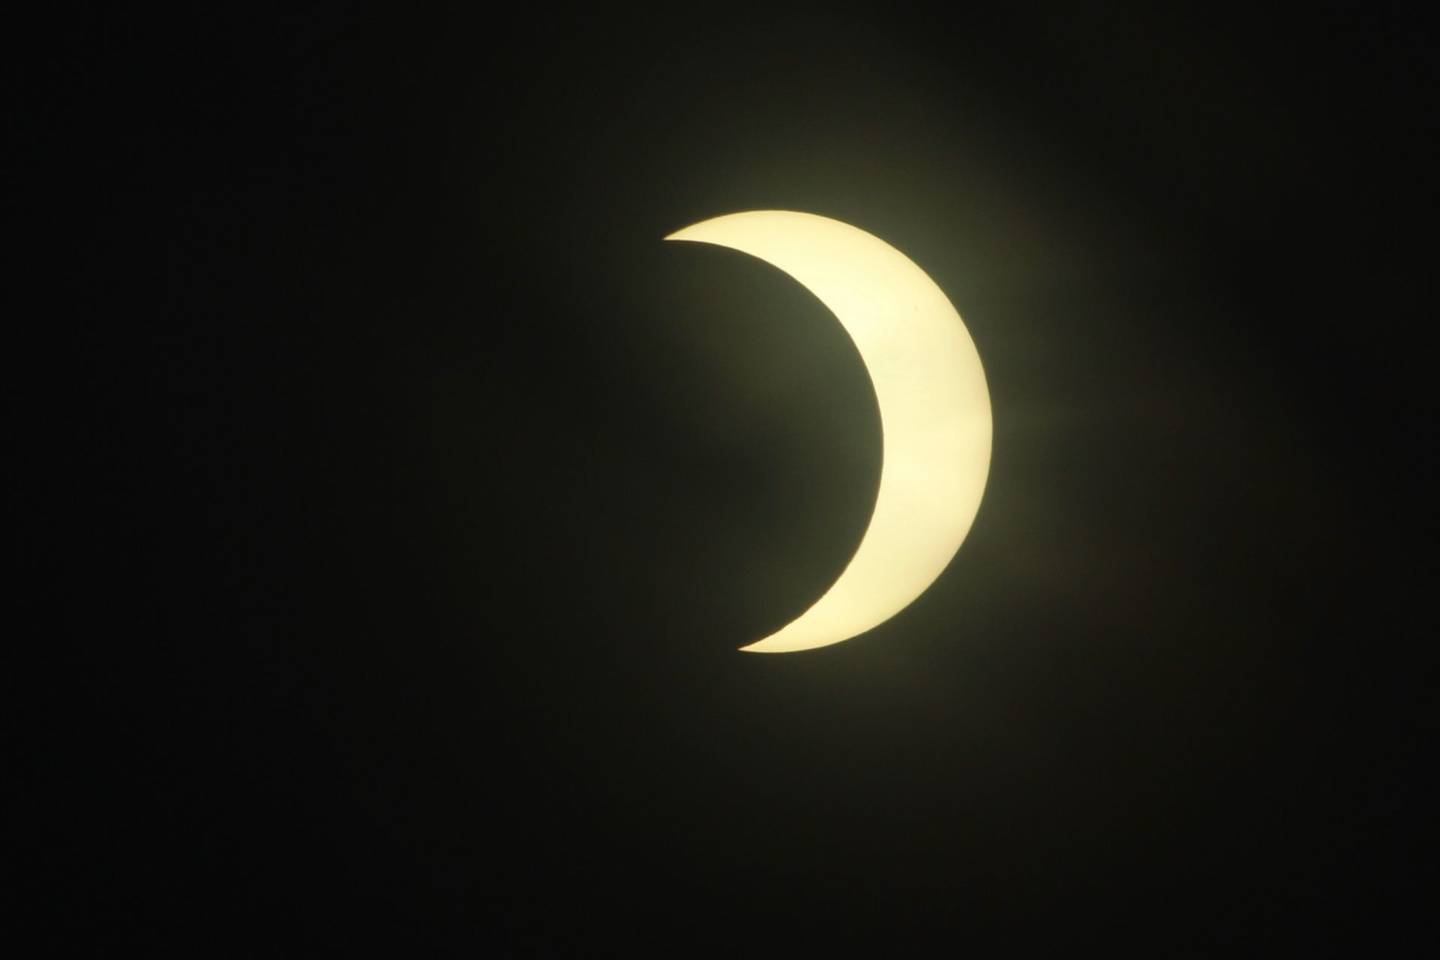 La fase de eclipse anular alcanzó su punto máximo a las 11:24.